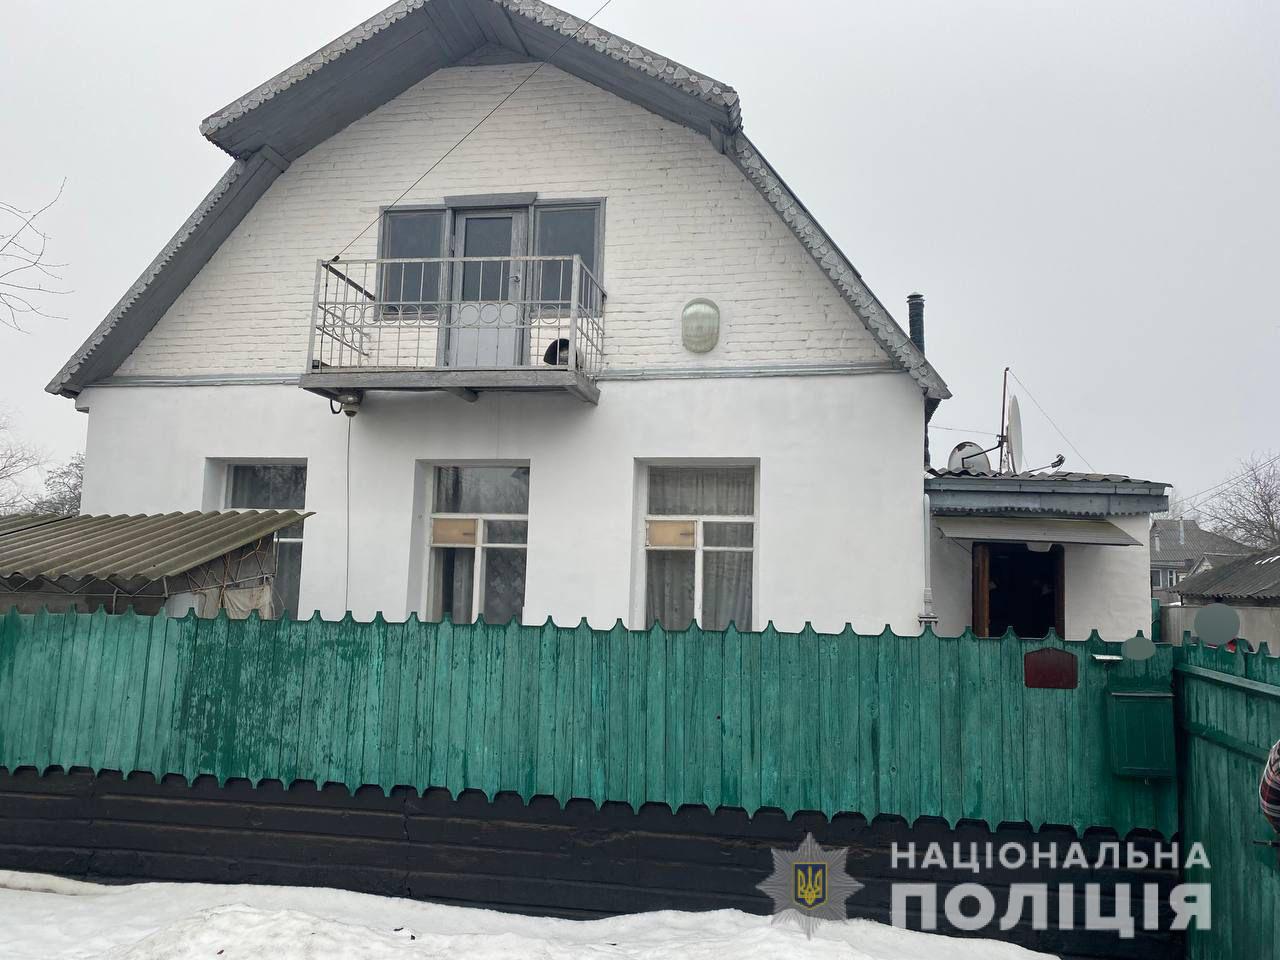 Отравление газом семьи на Харьковщине: полиция рассказала подробности (фото)